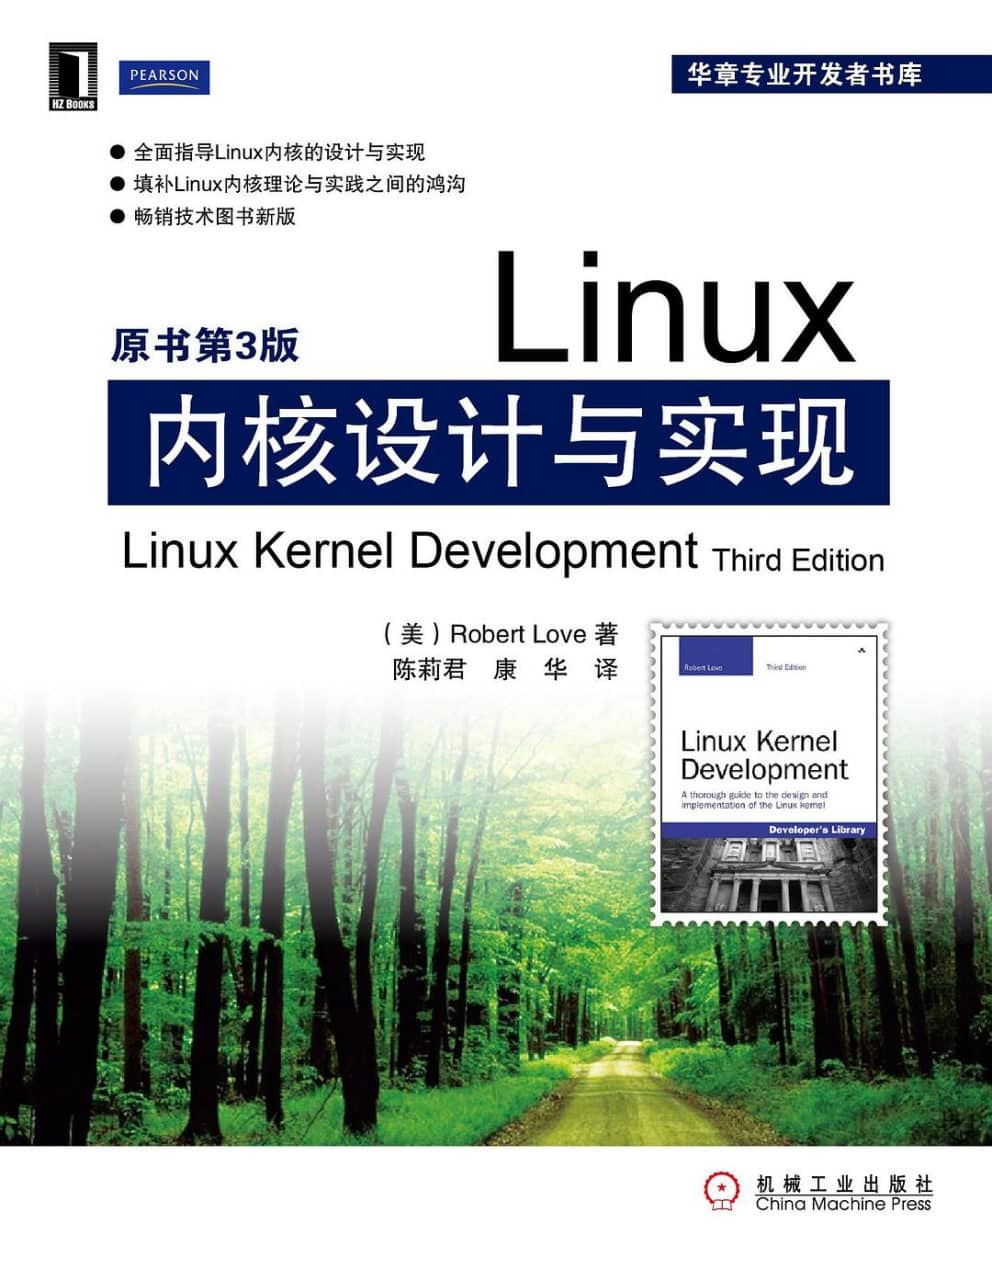 《Linux内核设计与实现(原书第3版)》高清电子书PDF免费下载